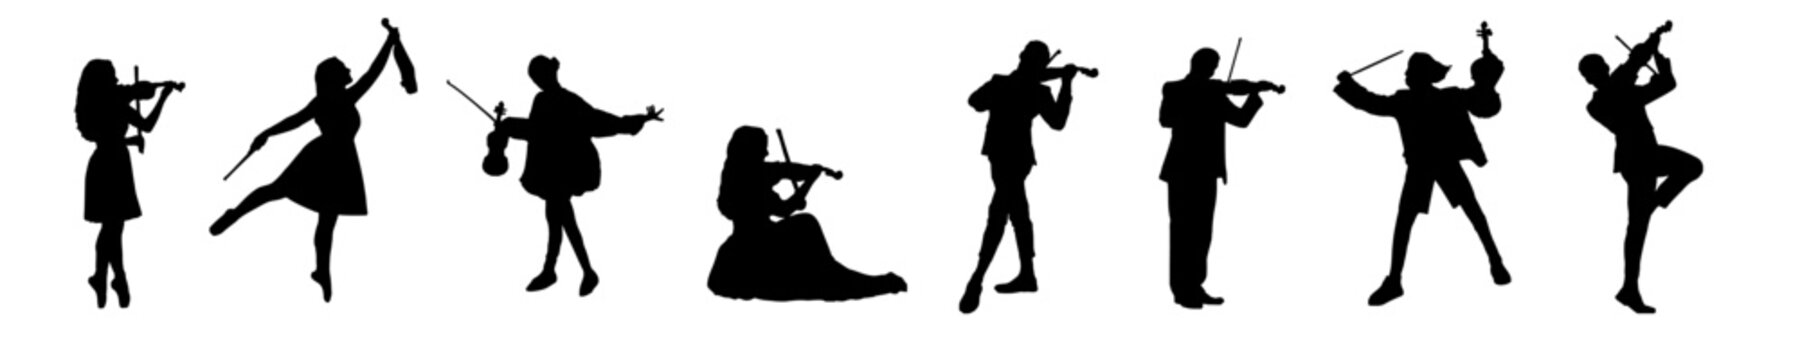 violin musician silhouette illustration